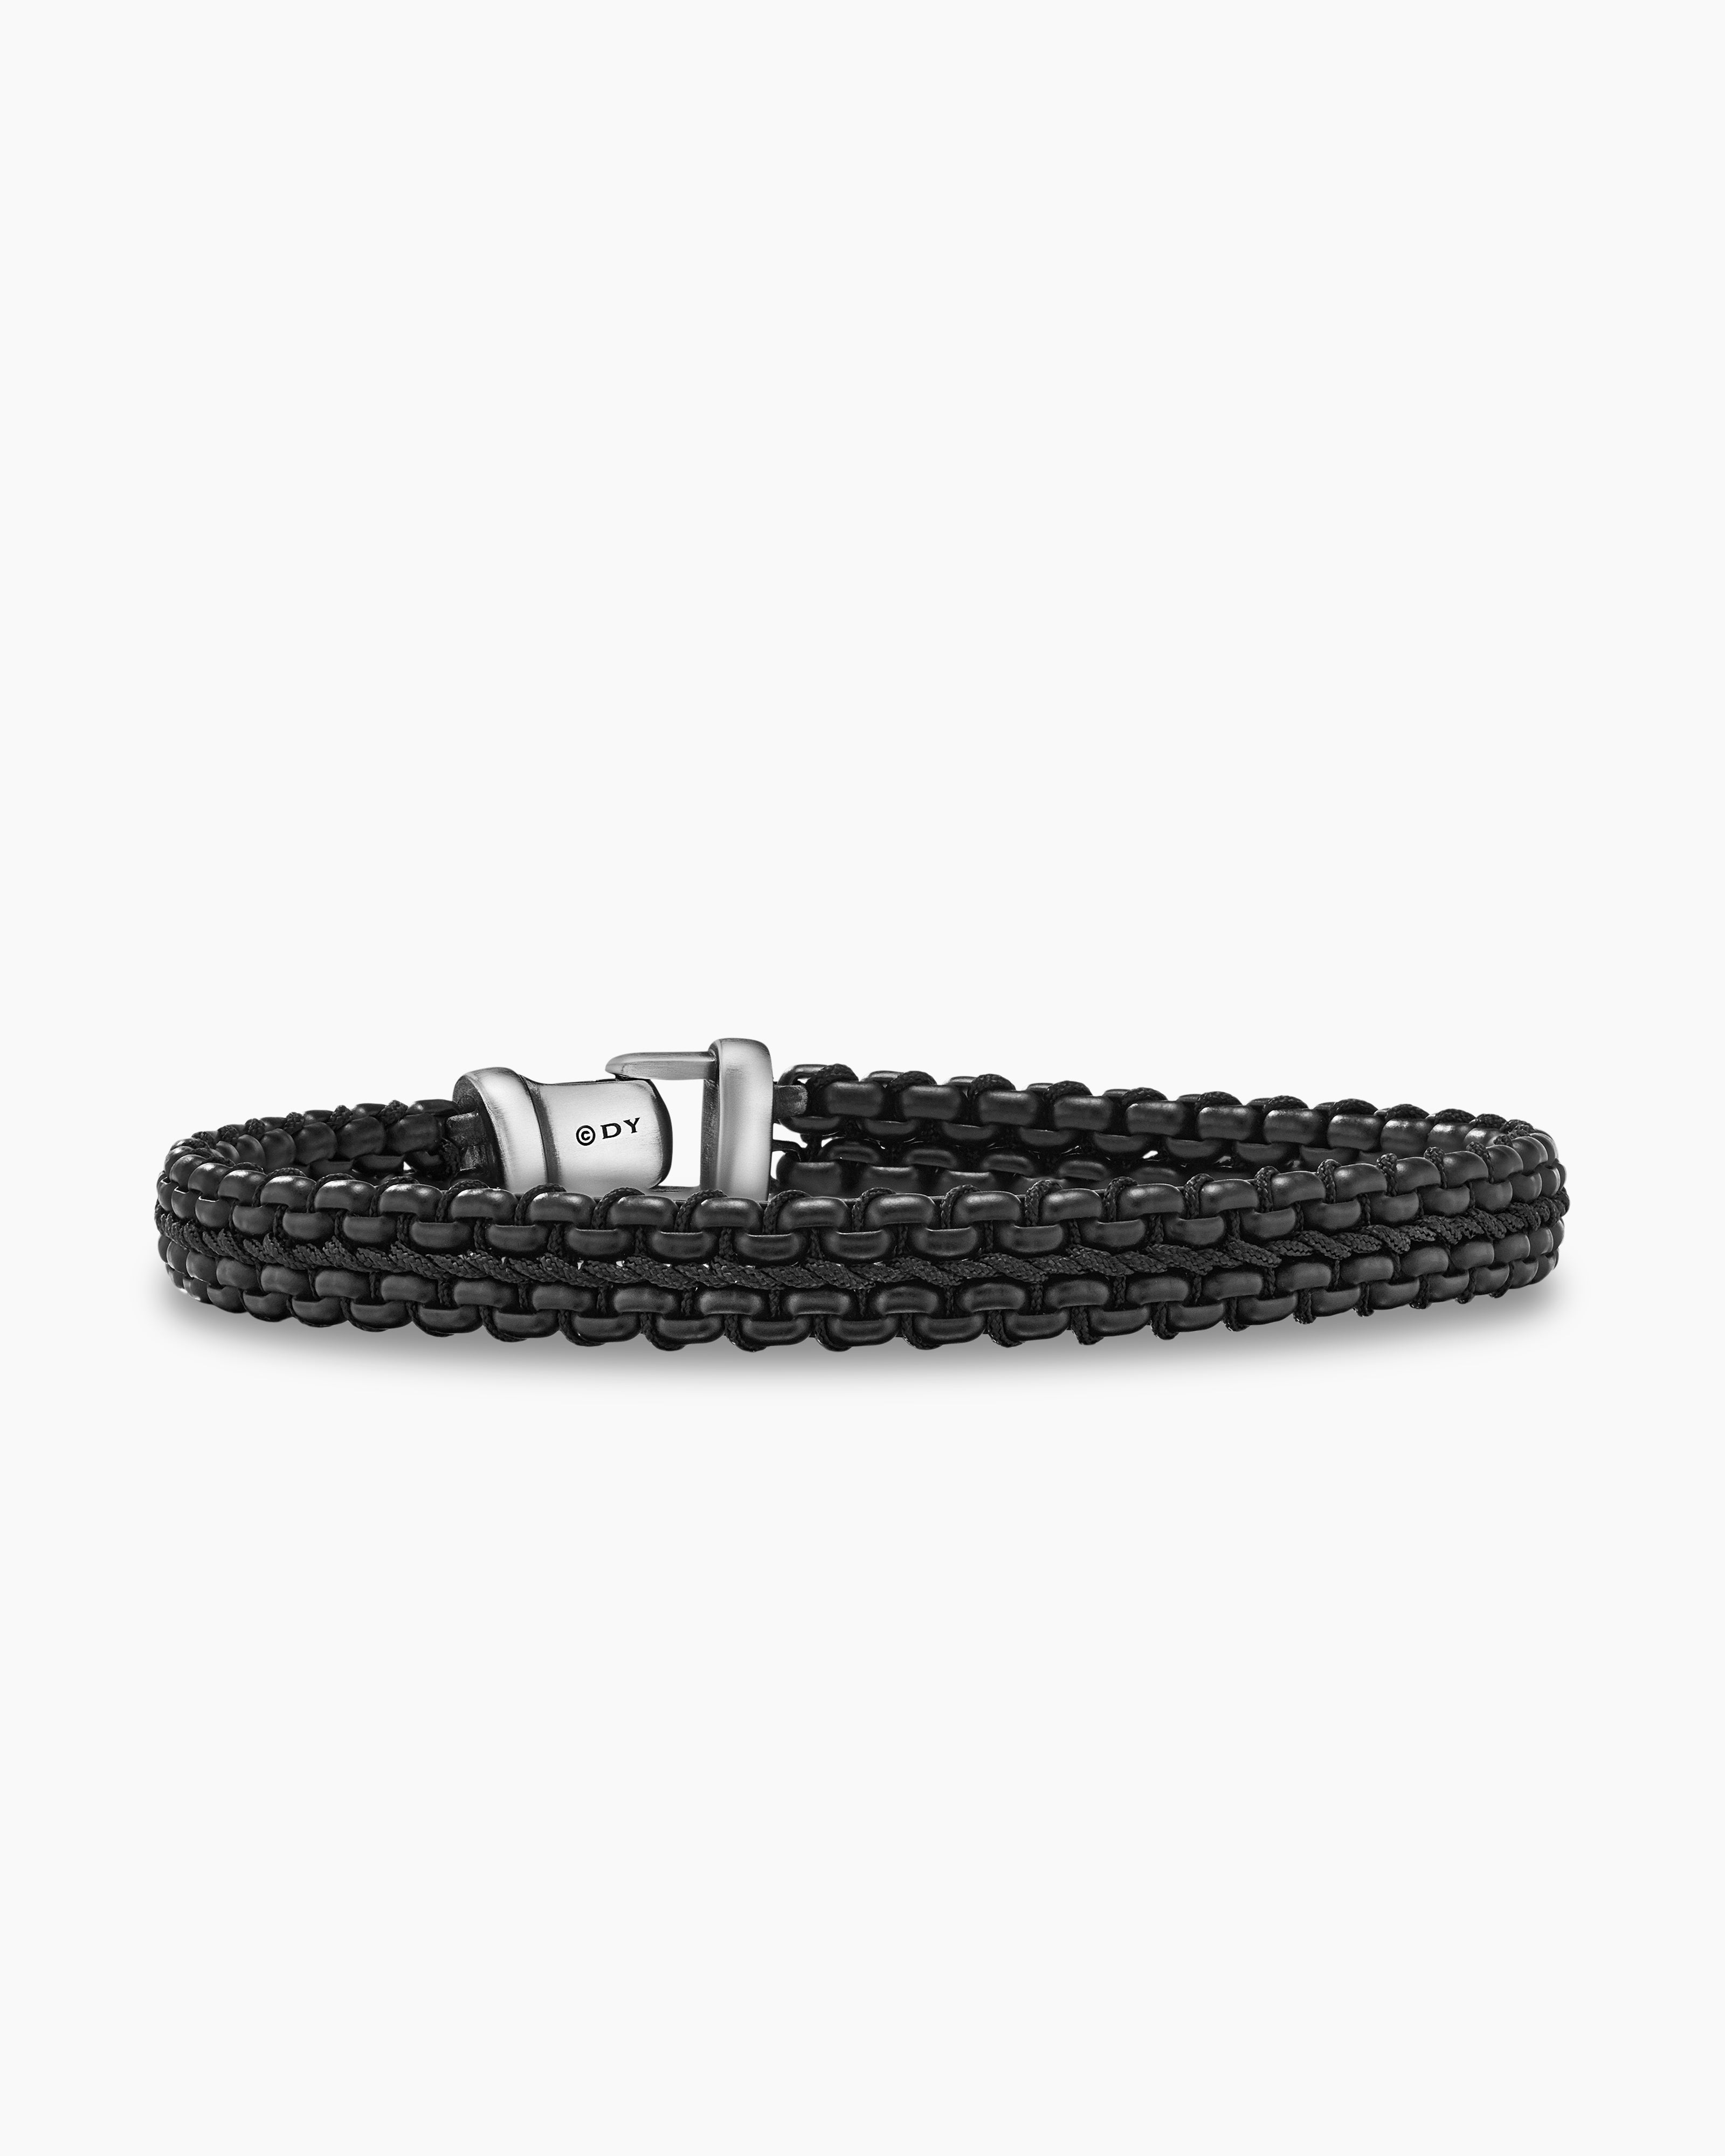 Men's Bracelet, Black Bracelet Set, Bracelets For Men, Bracelet Men,  Wristband | eBay